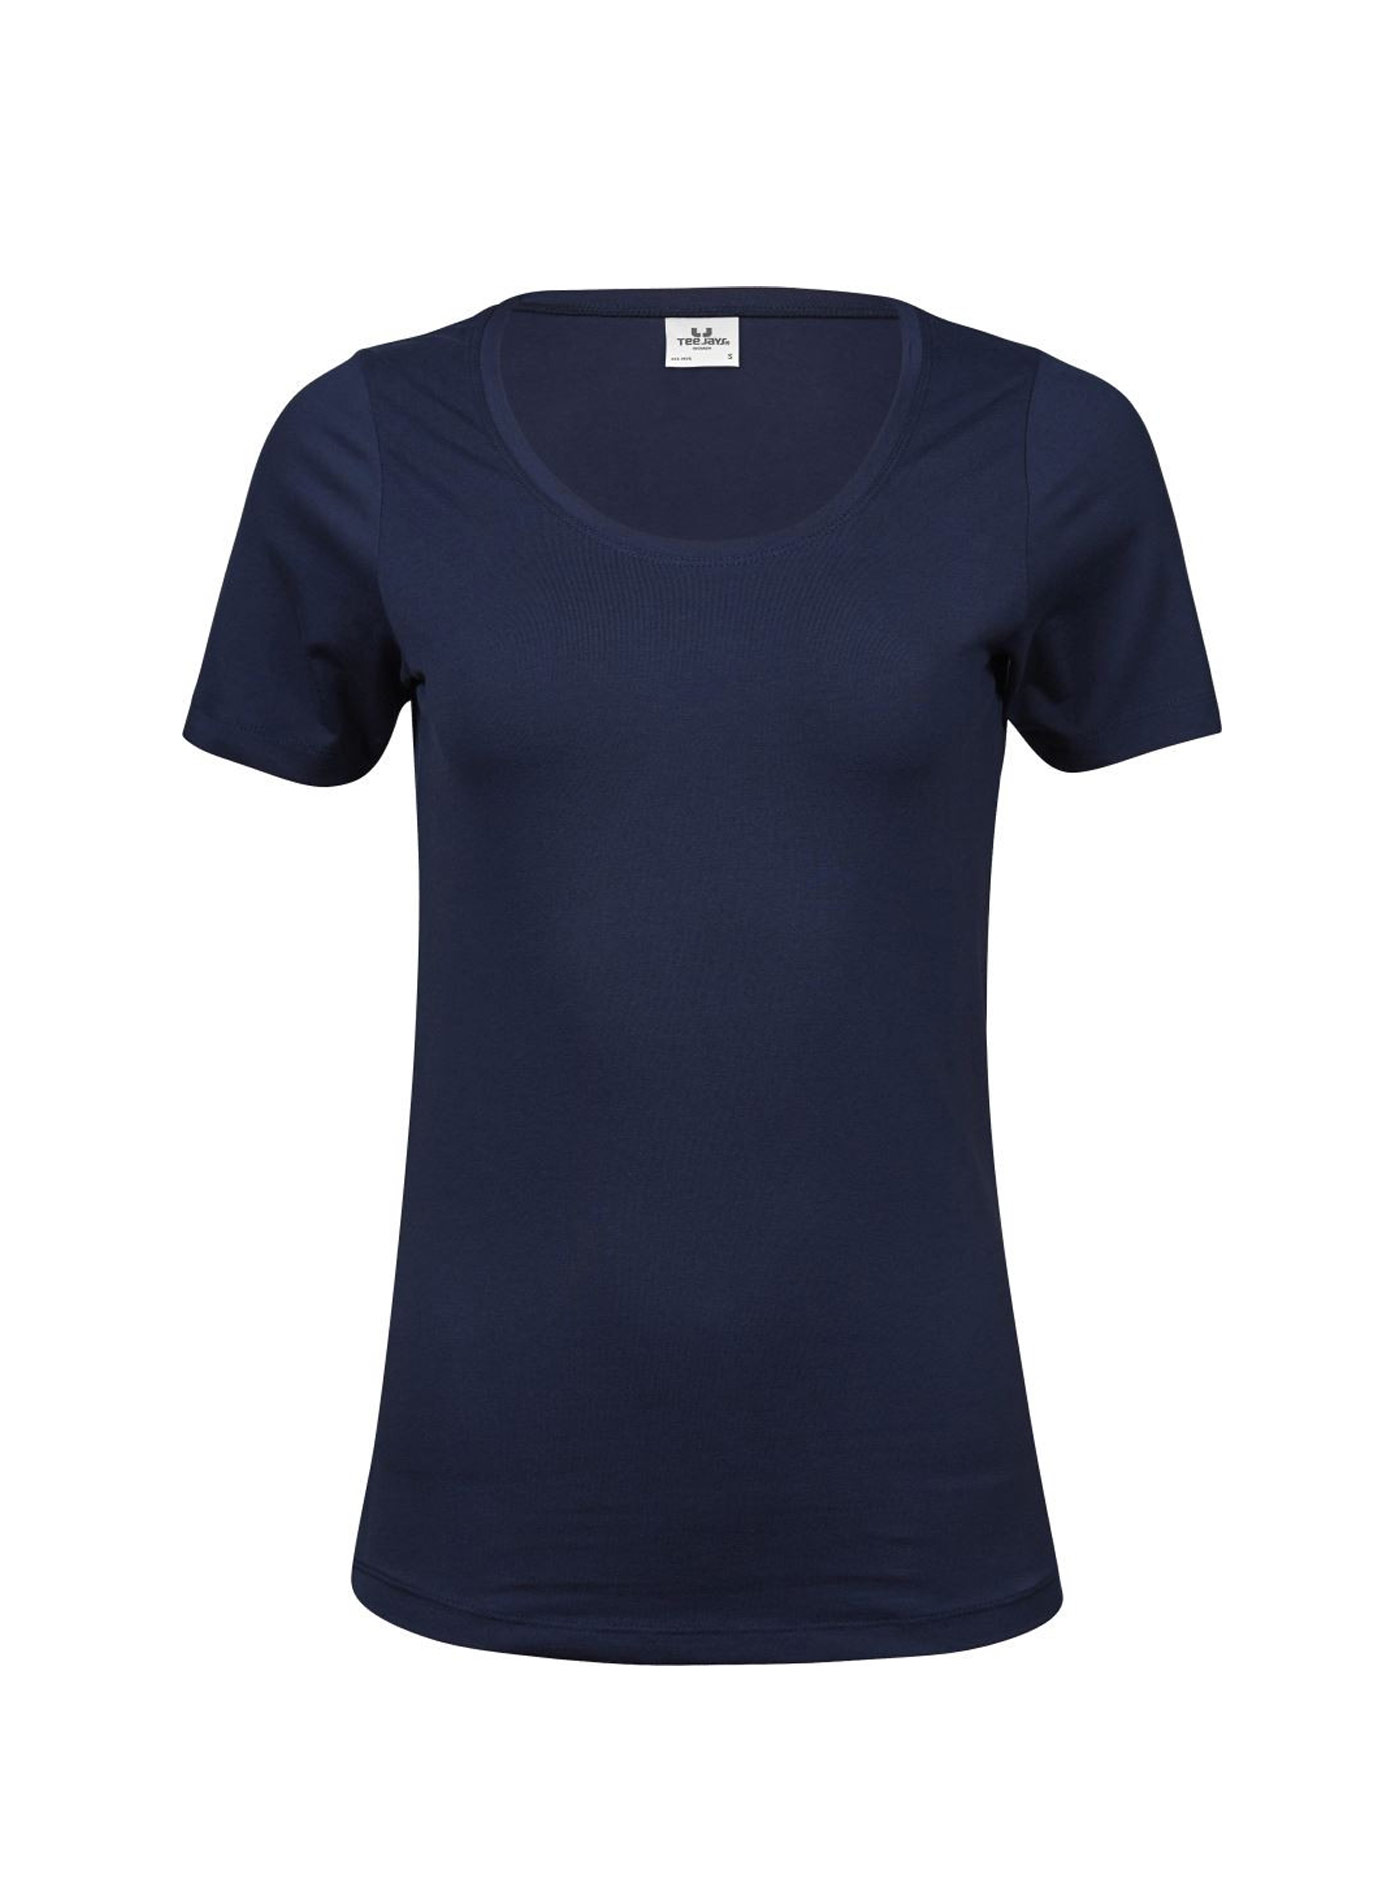 Dámské Stretch Tee tričko Tee Jays - Námořní modrá S